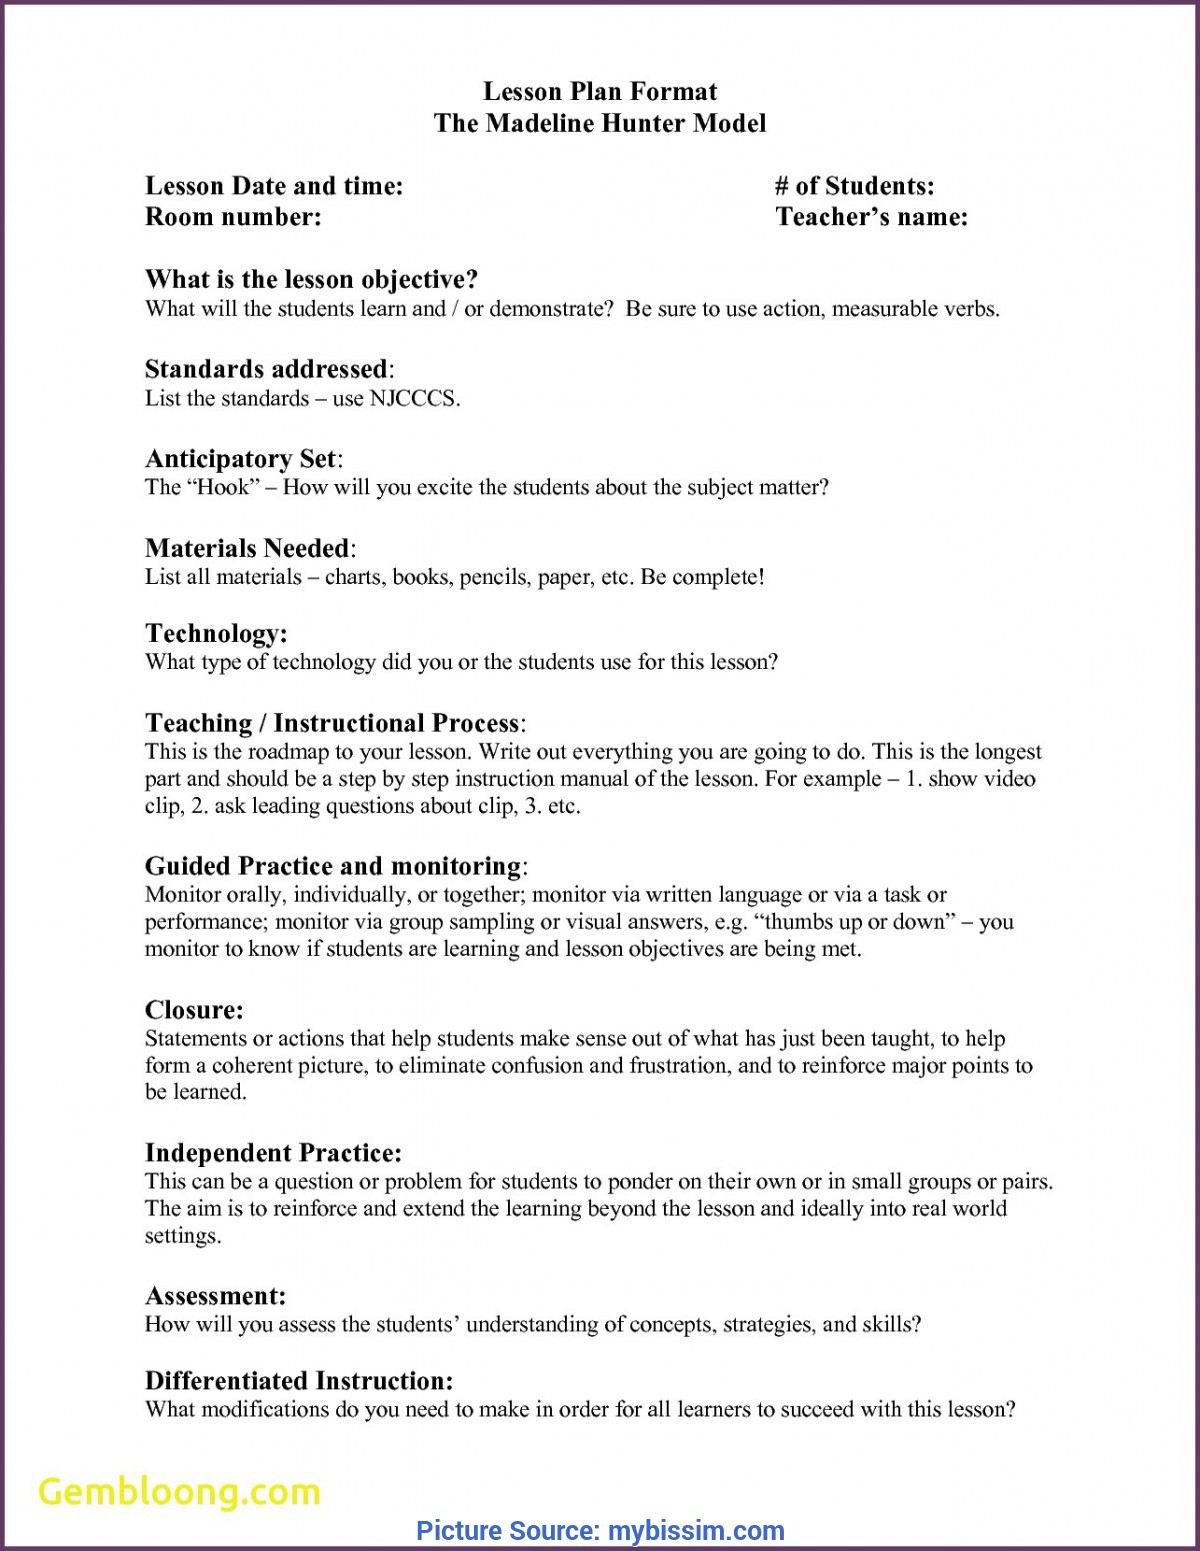 Regular Madeline Hunter Lesson Plan Format Example Elegant 5 Intended For Madeline Hunter Lesson Plan Template Blank